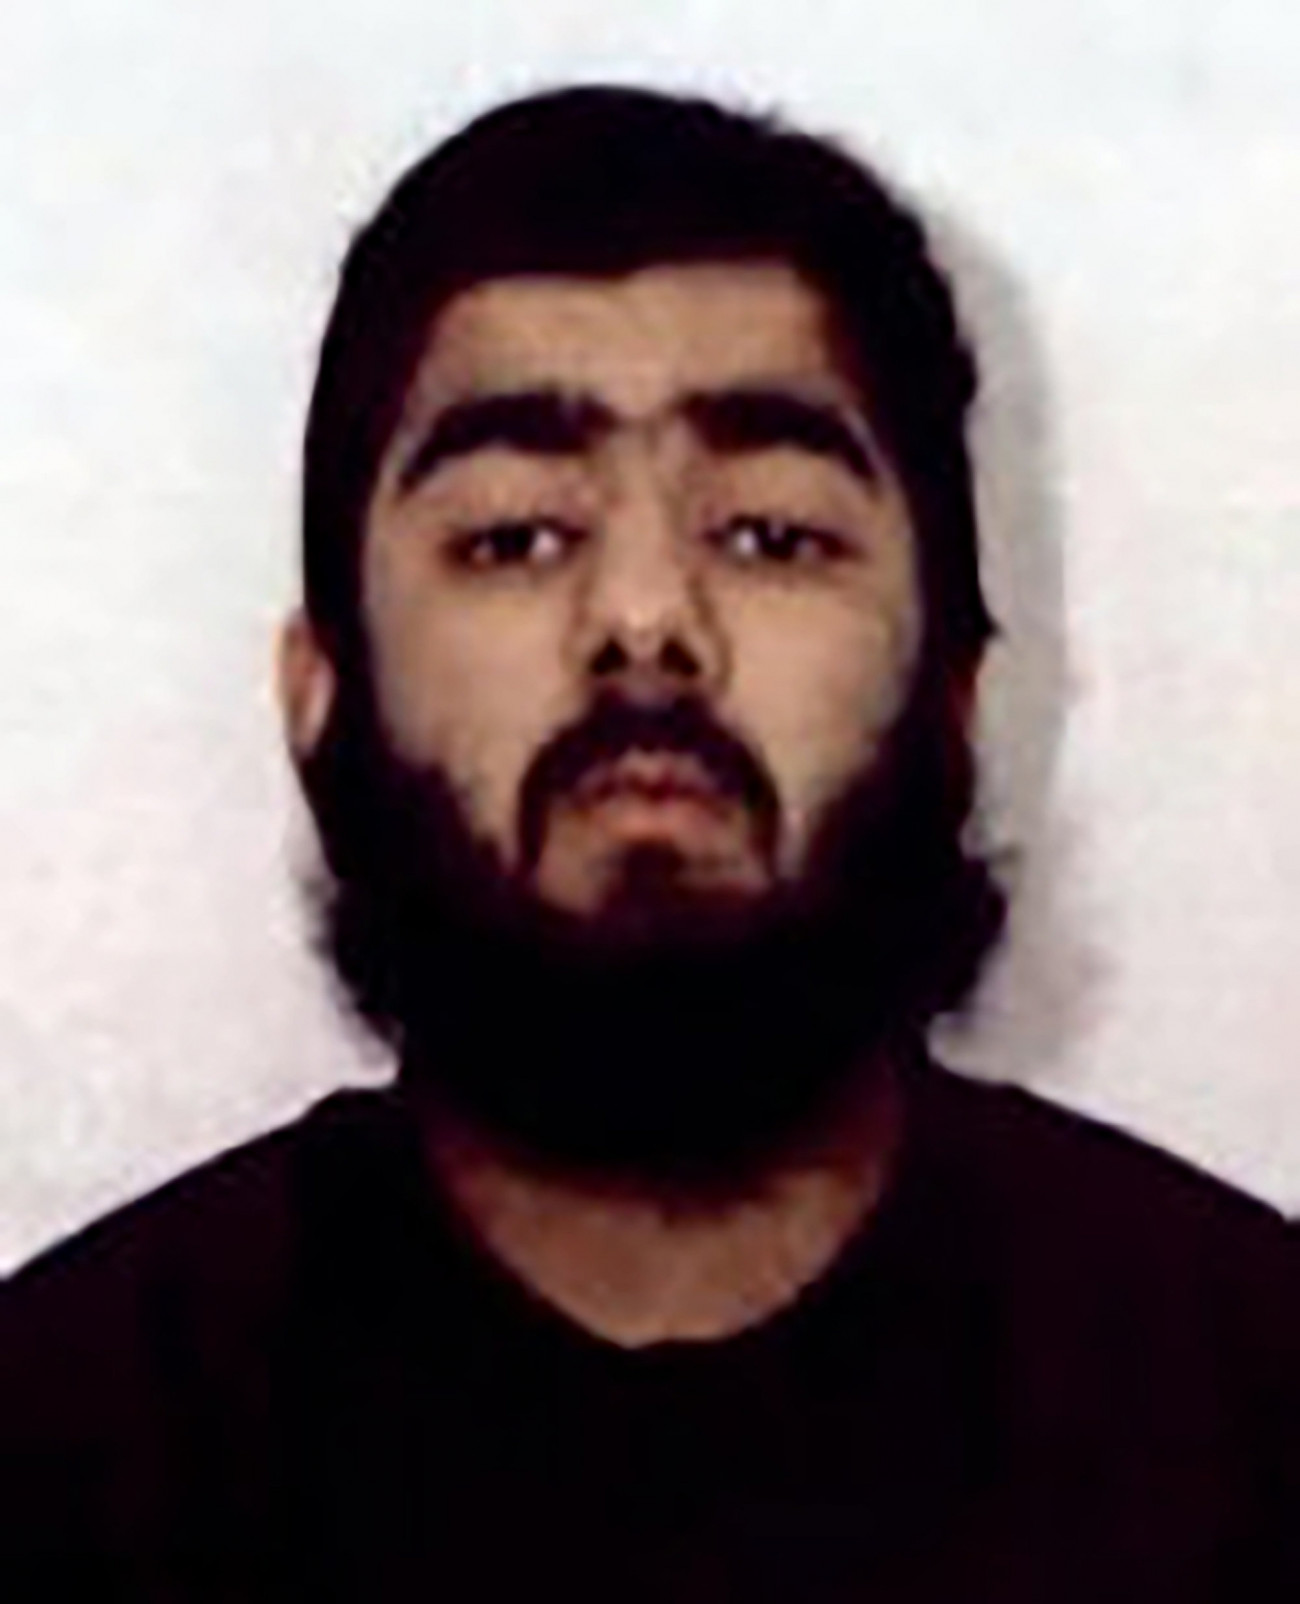 A West Midlands-i rendőrség által közreadott, dátumozatlan kép Usman Khanról, a 2019. november 29-i londoni késeléses támadás elkövetőjéről. A 28 éves Usman Khan robbantásos merényletek előkészülete és dzsihadista kiképzőtábor létrehozásának terve miatt 6 évet töltött börtönben, mielőtt 2018 decemberében próbaidőre szabadlábra helyezték. Khan 2019. november 29-én a brit főváros pénzügyi negyedében két embert megölt és hármat megsebesített, mielőtt járókelők lefogták, majd rendőrök agyonlőtték.
MTI/AP